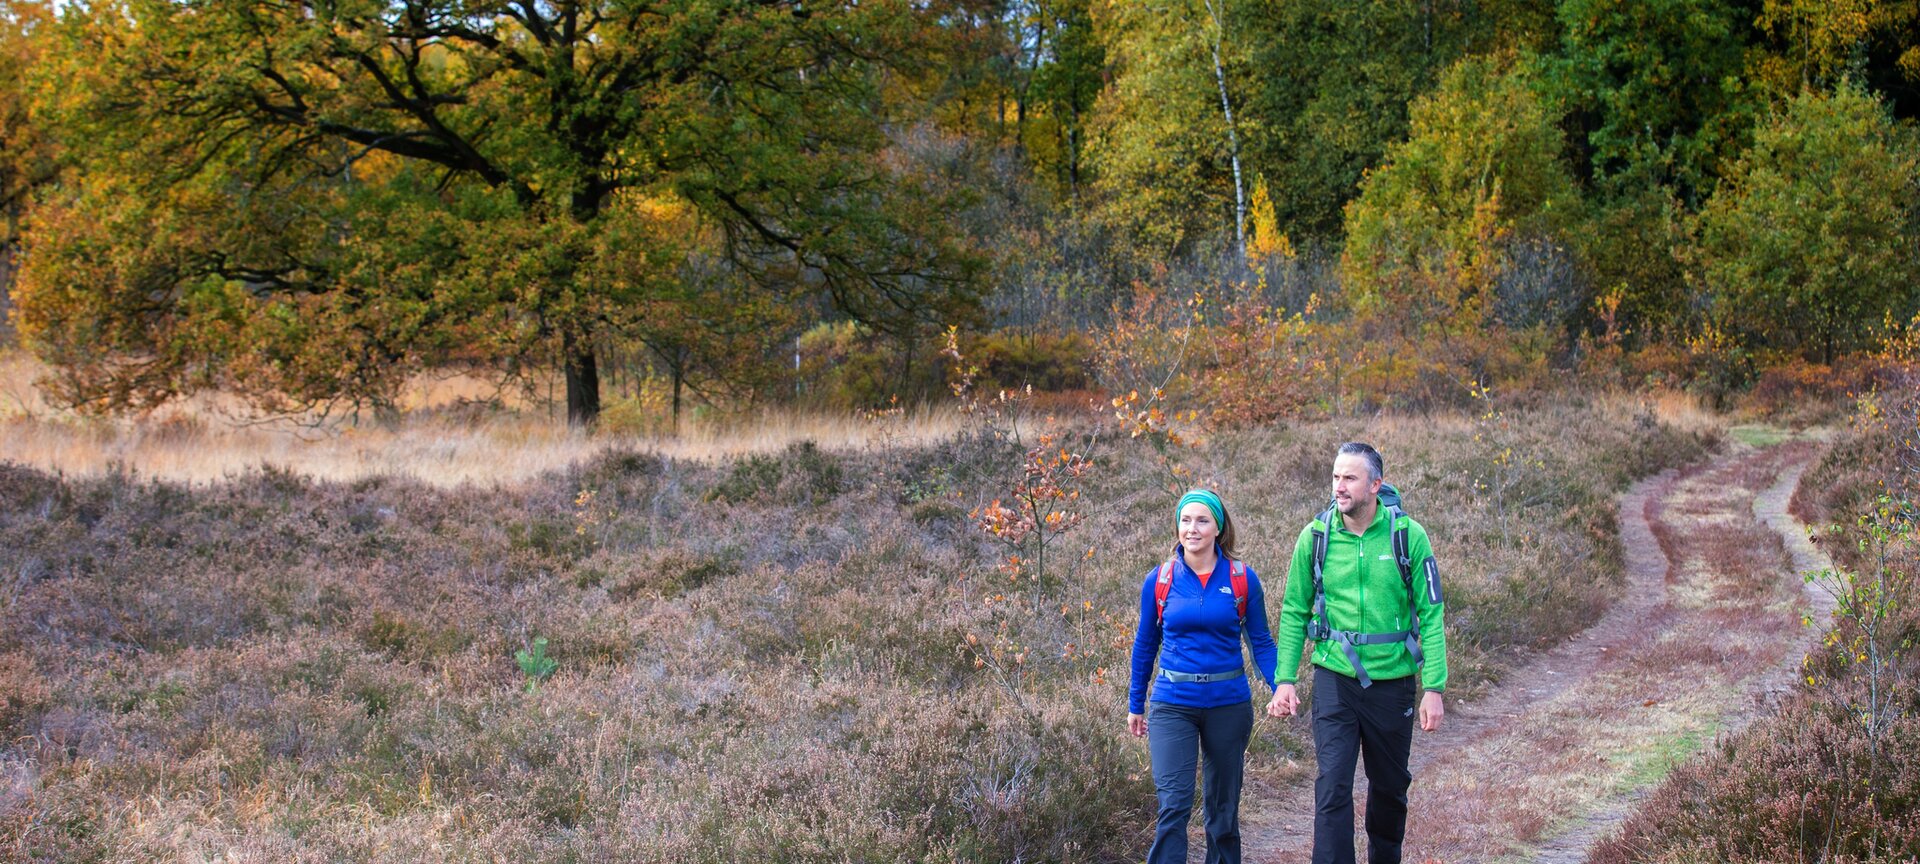 Nationaal Park Bosland: Wandelnetwerk - wandelen in Bosland